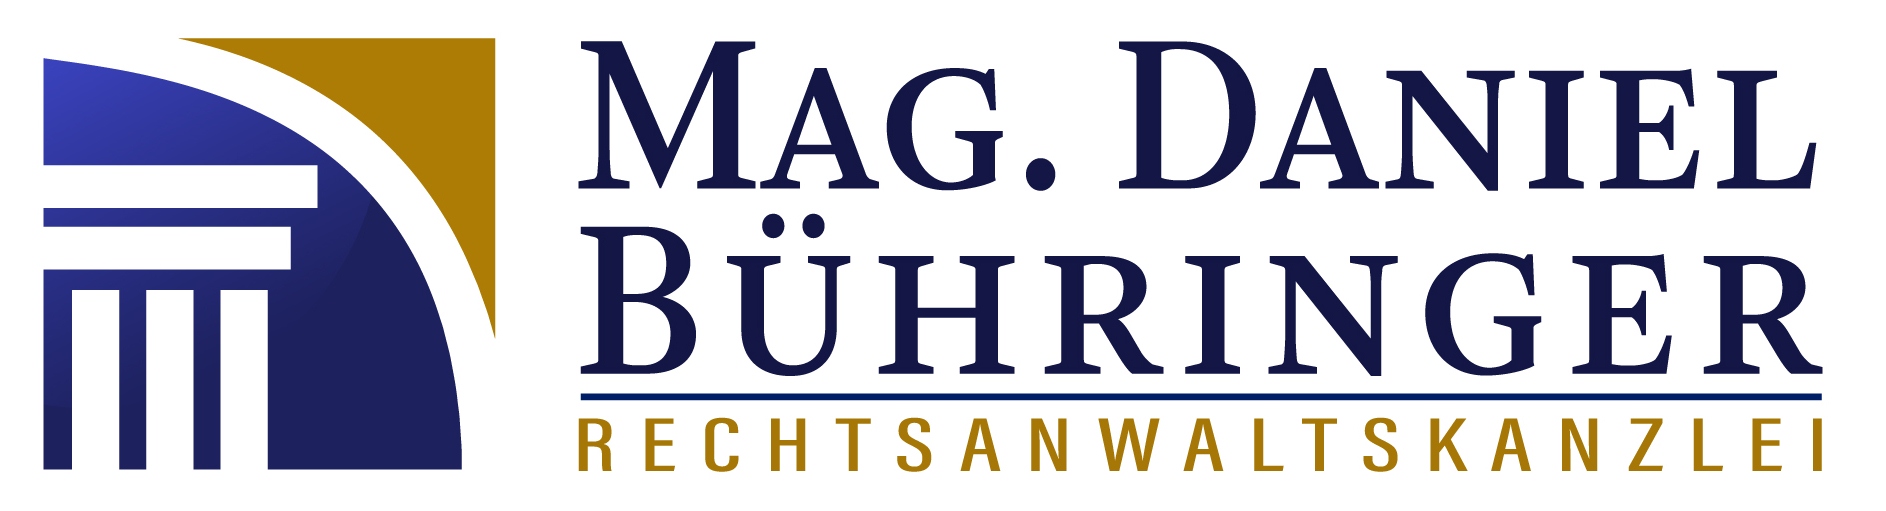 Mag. Daniel Bühringer Logo